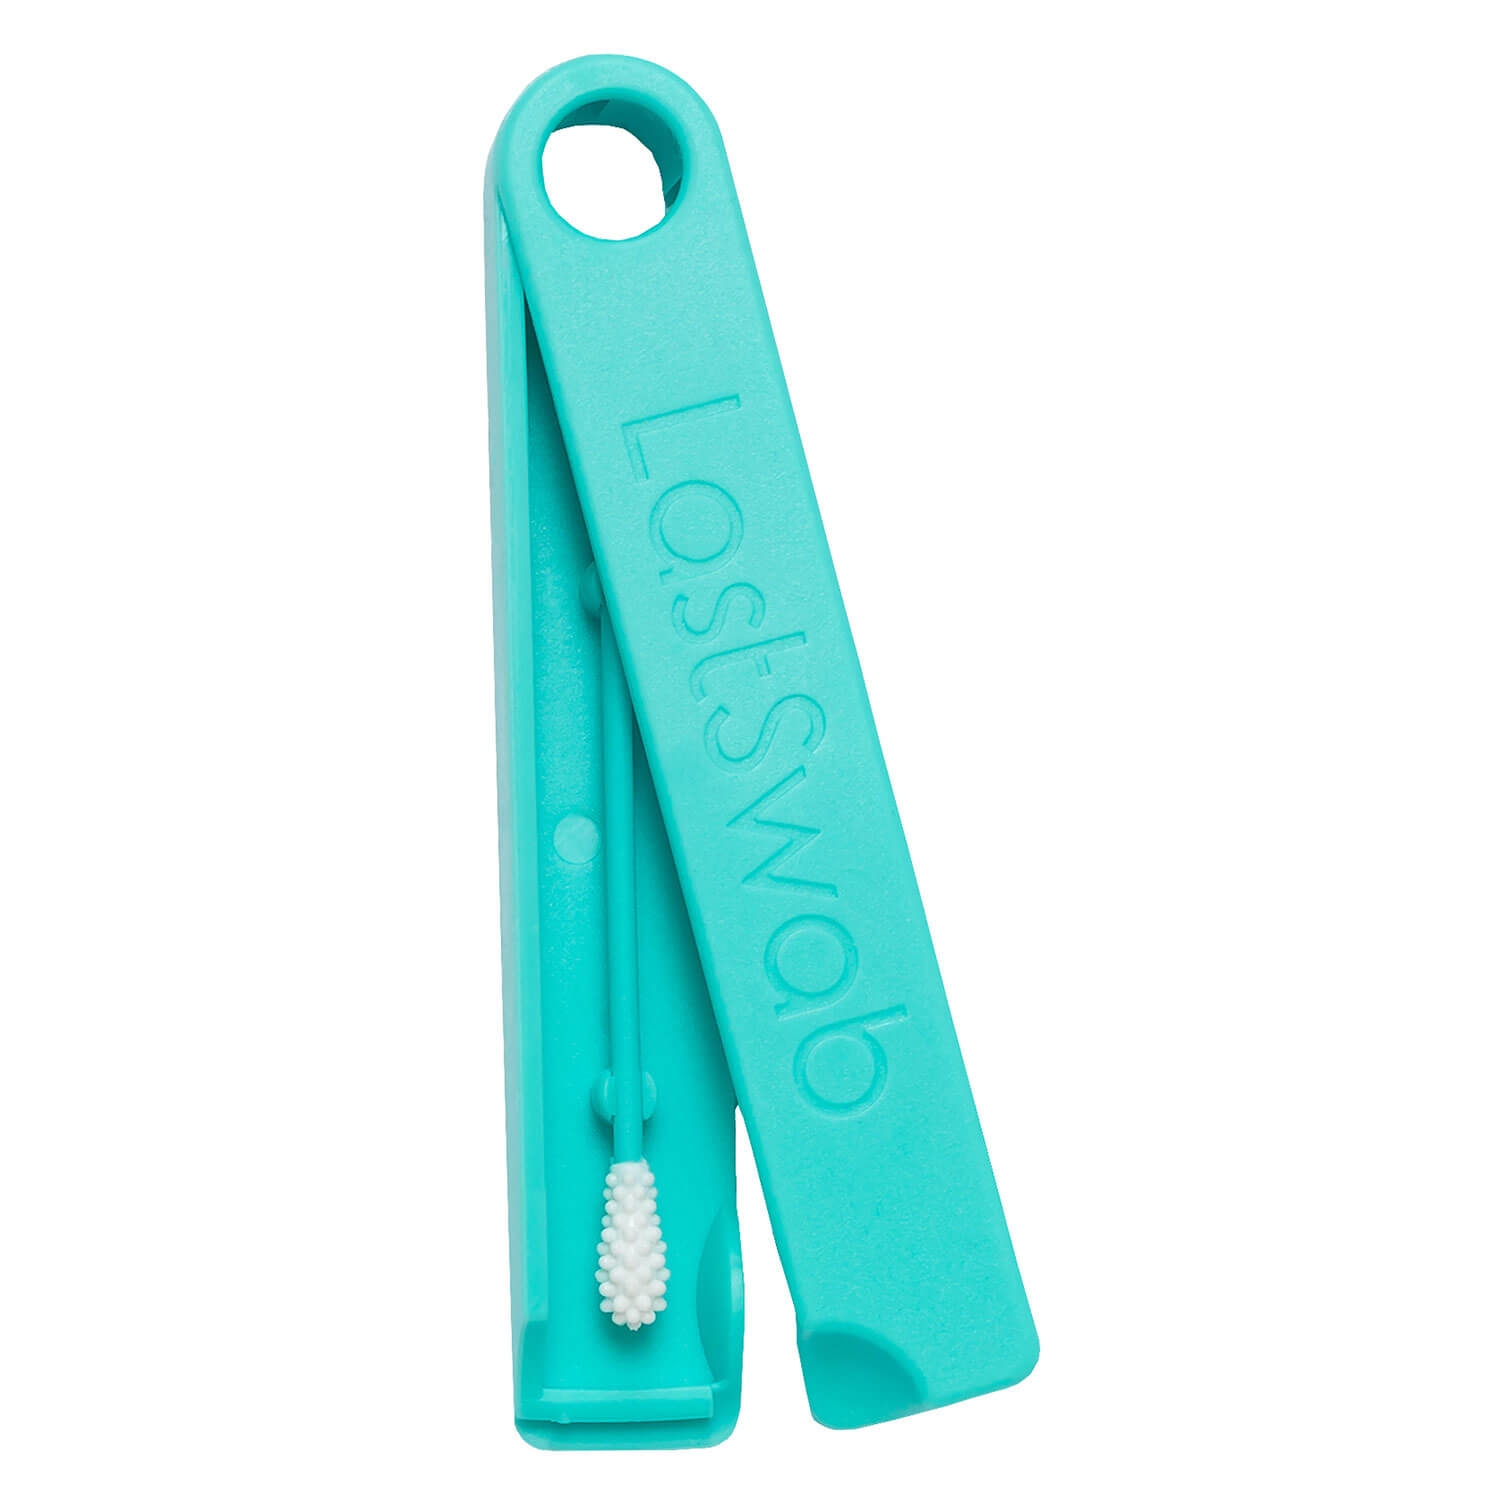 Produktbild von LastSwab - Reusable Cotton Swab Dolphin Turquoise